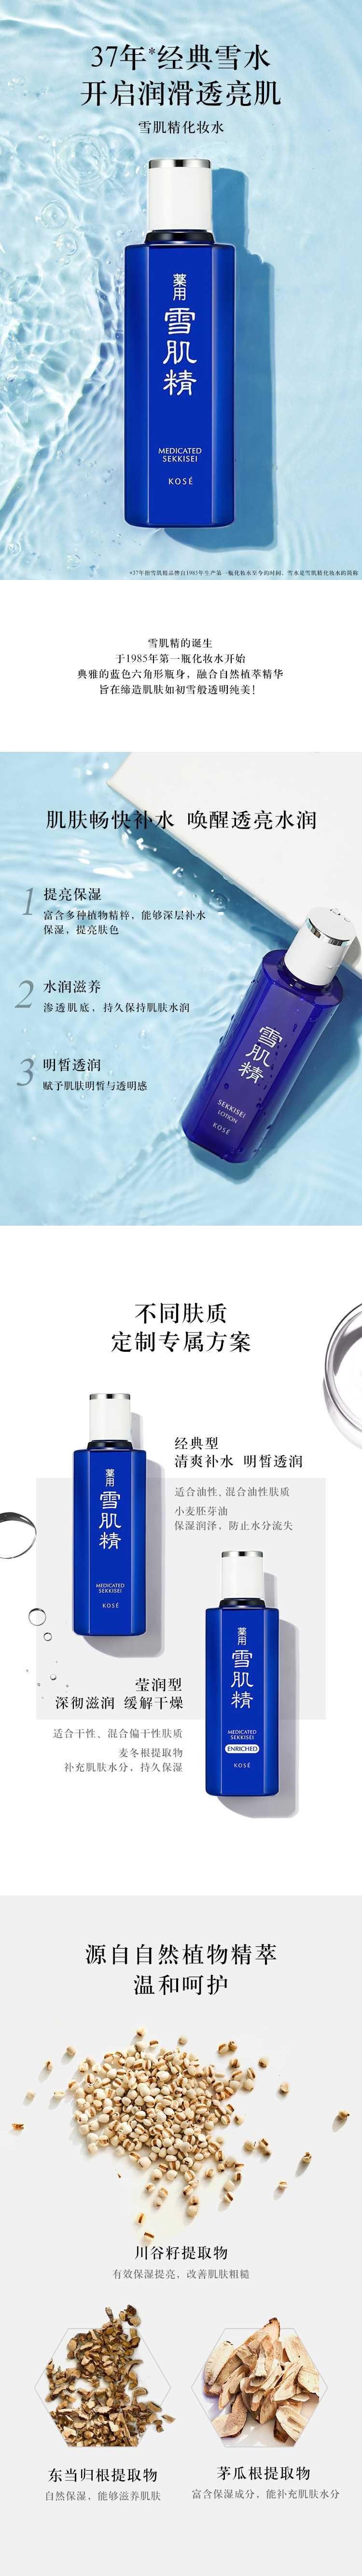 【日本直邮】SEKKISEI雪肌精 药用提亮补水保湿美化妆水200ml 清爽型